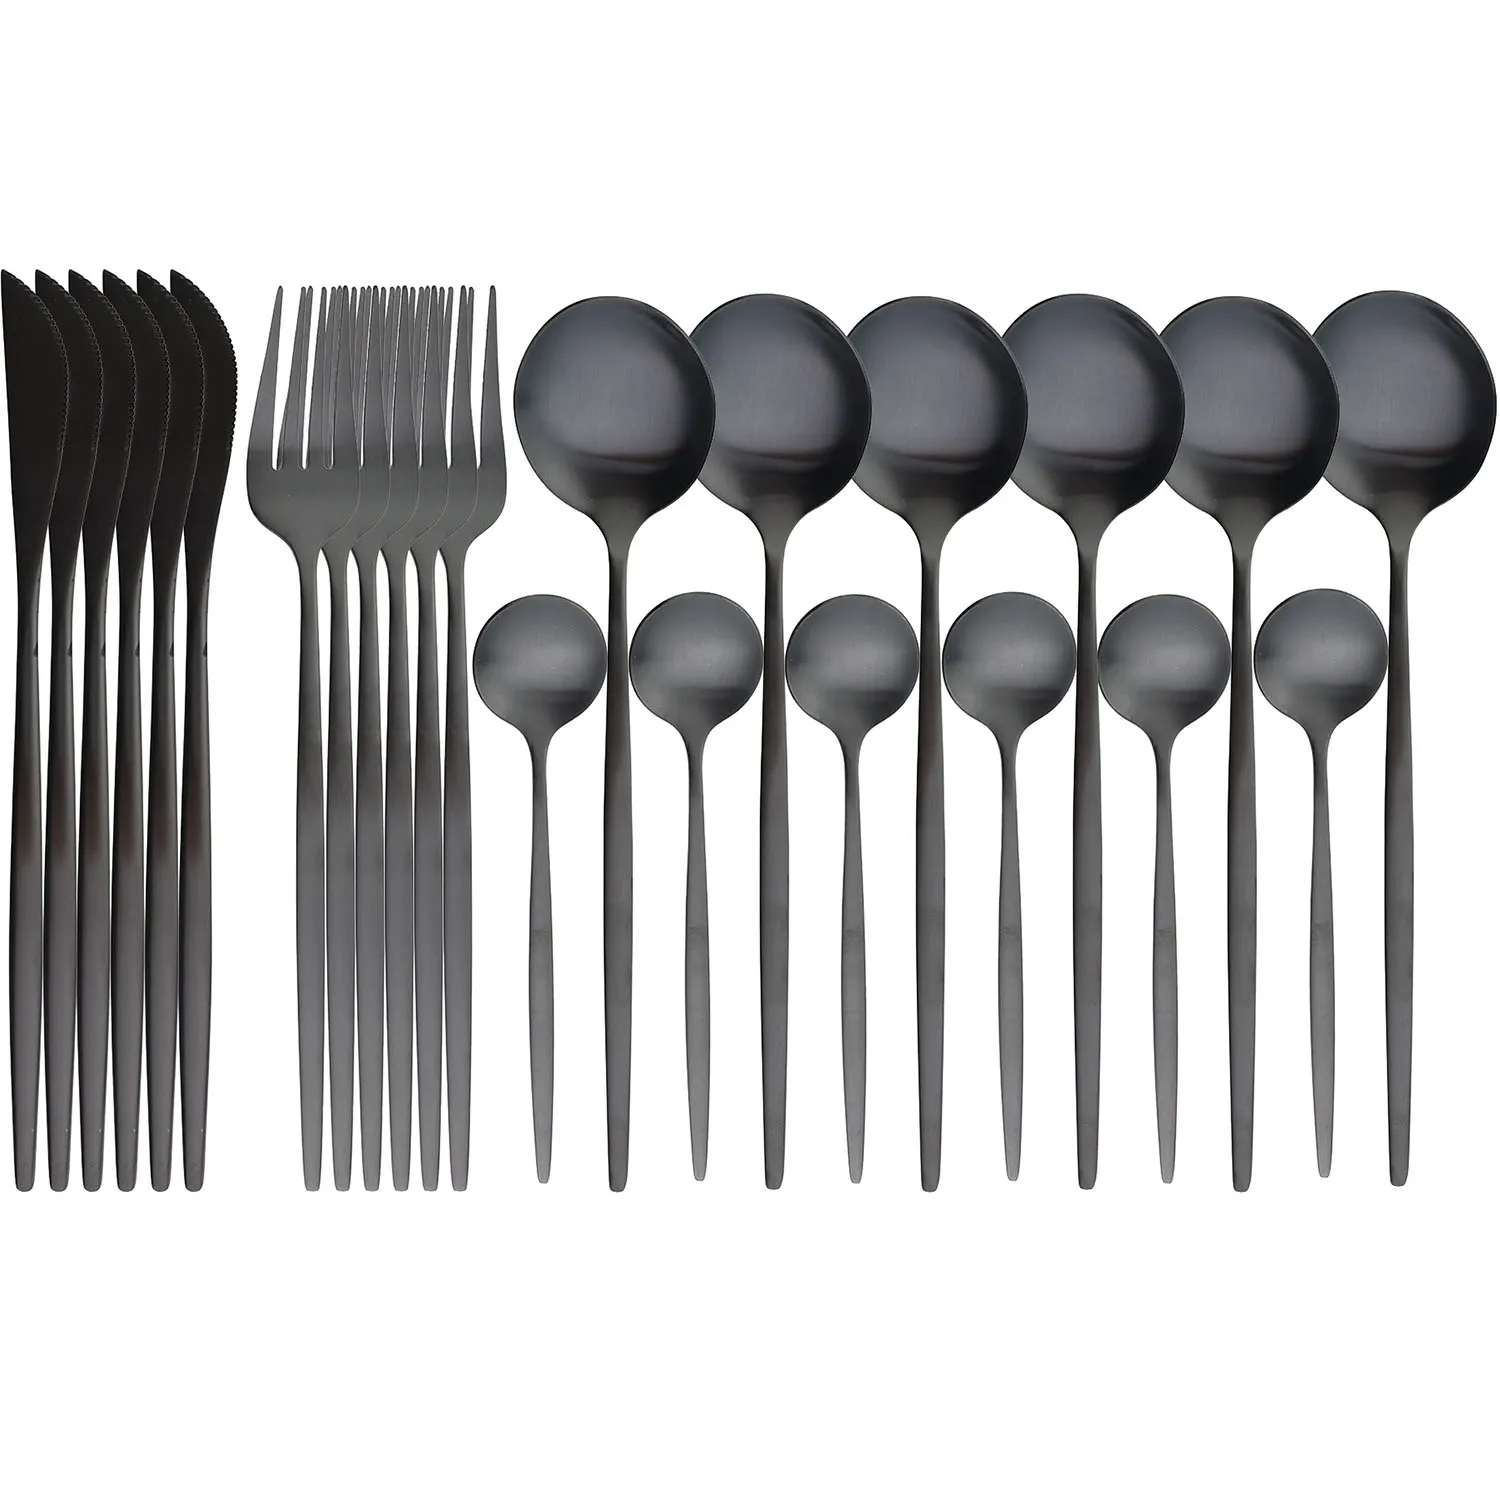 

JANKNG 24Pcs Matte Black Cutlery Set Stainless Steel Dinnerware Set Gold Flatware Knife Fork Spoon Dinner Silverware Tableware